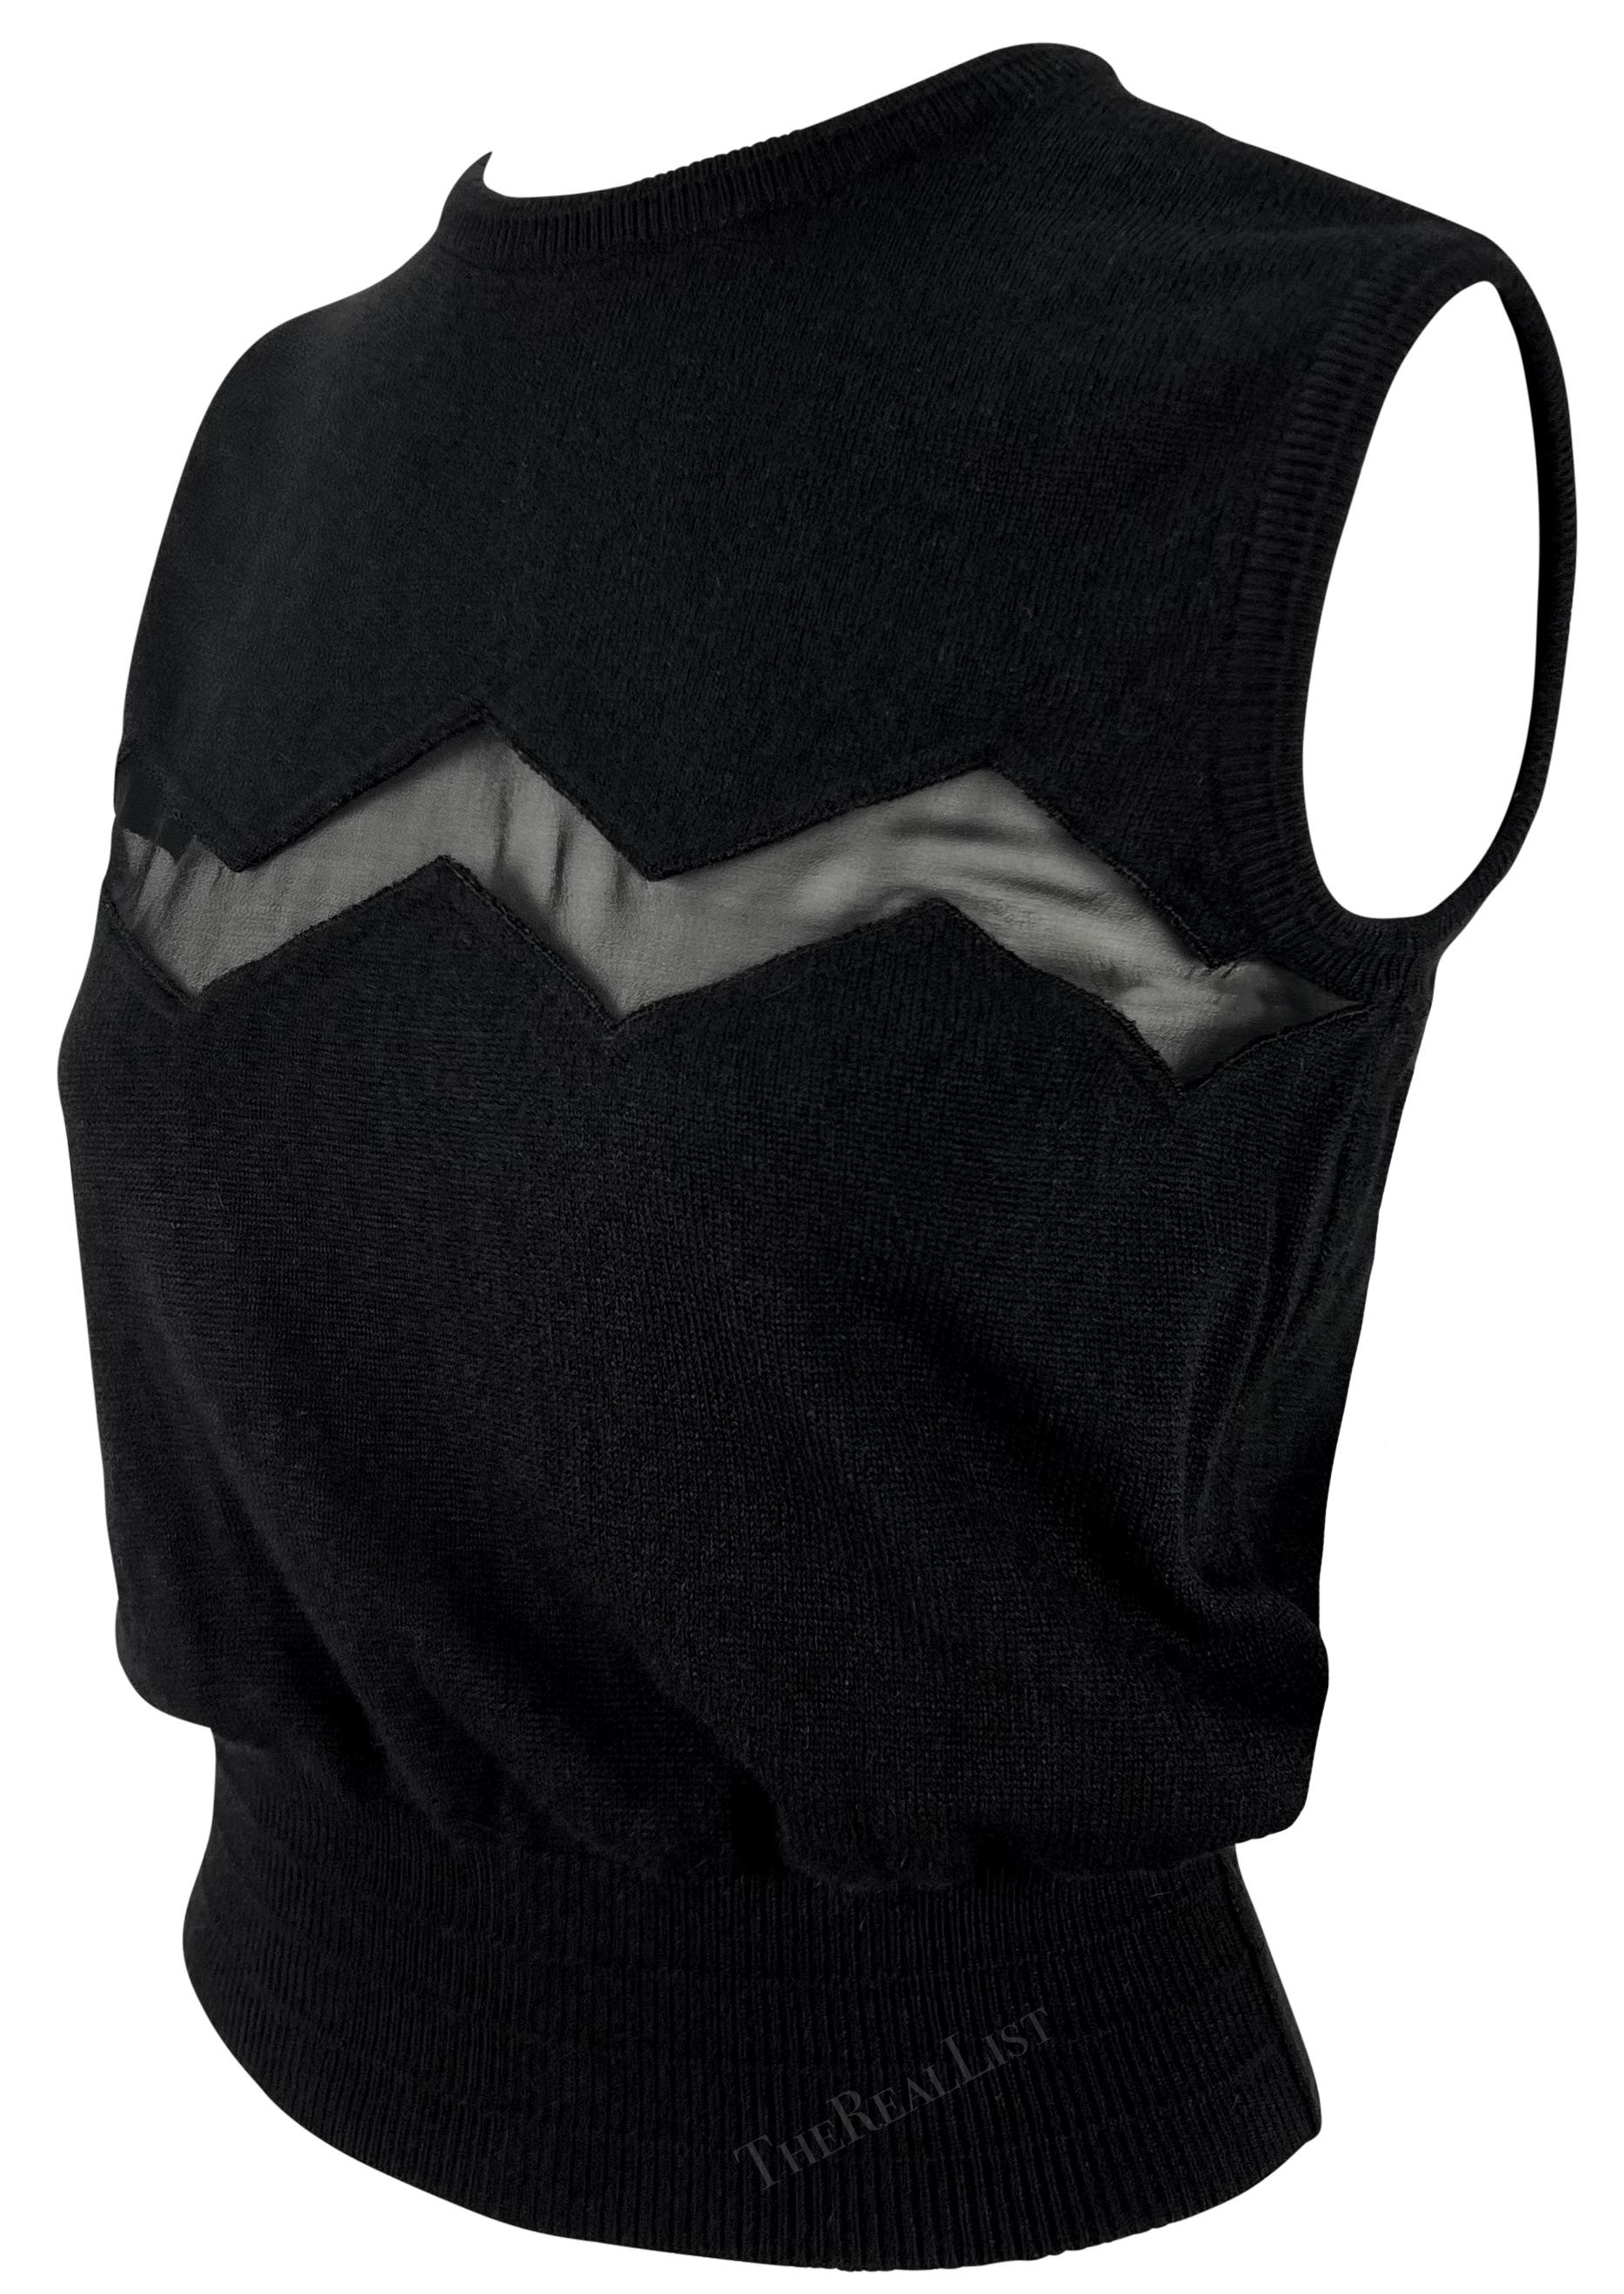 Diese schicke schwarze ärmellose Gianni Versace Pulloverweste wurde von Gianni Versace für die Frühjahr/Sommer-Kollektion 1994 entworfen. Dieser ärmellose Pullover hat einen Rundhalsausschnitt und ist mit einem durchsichtigen Zickzack-Paneel